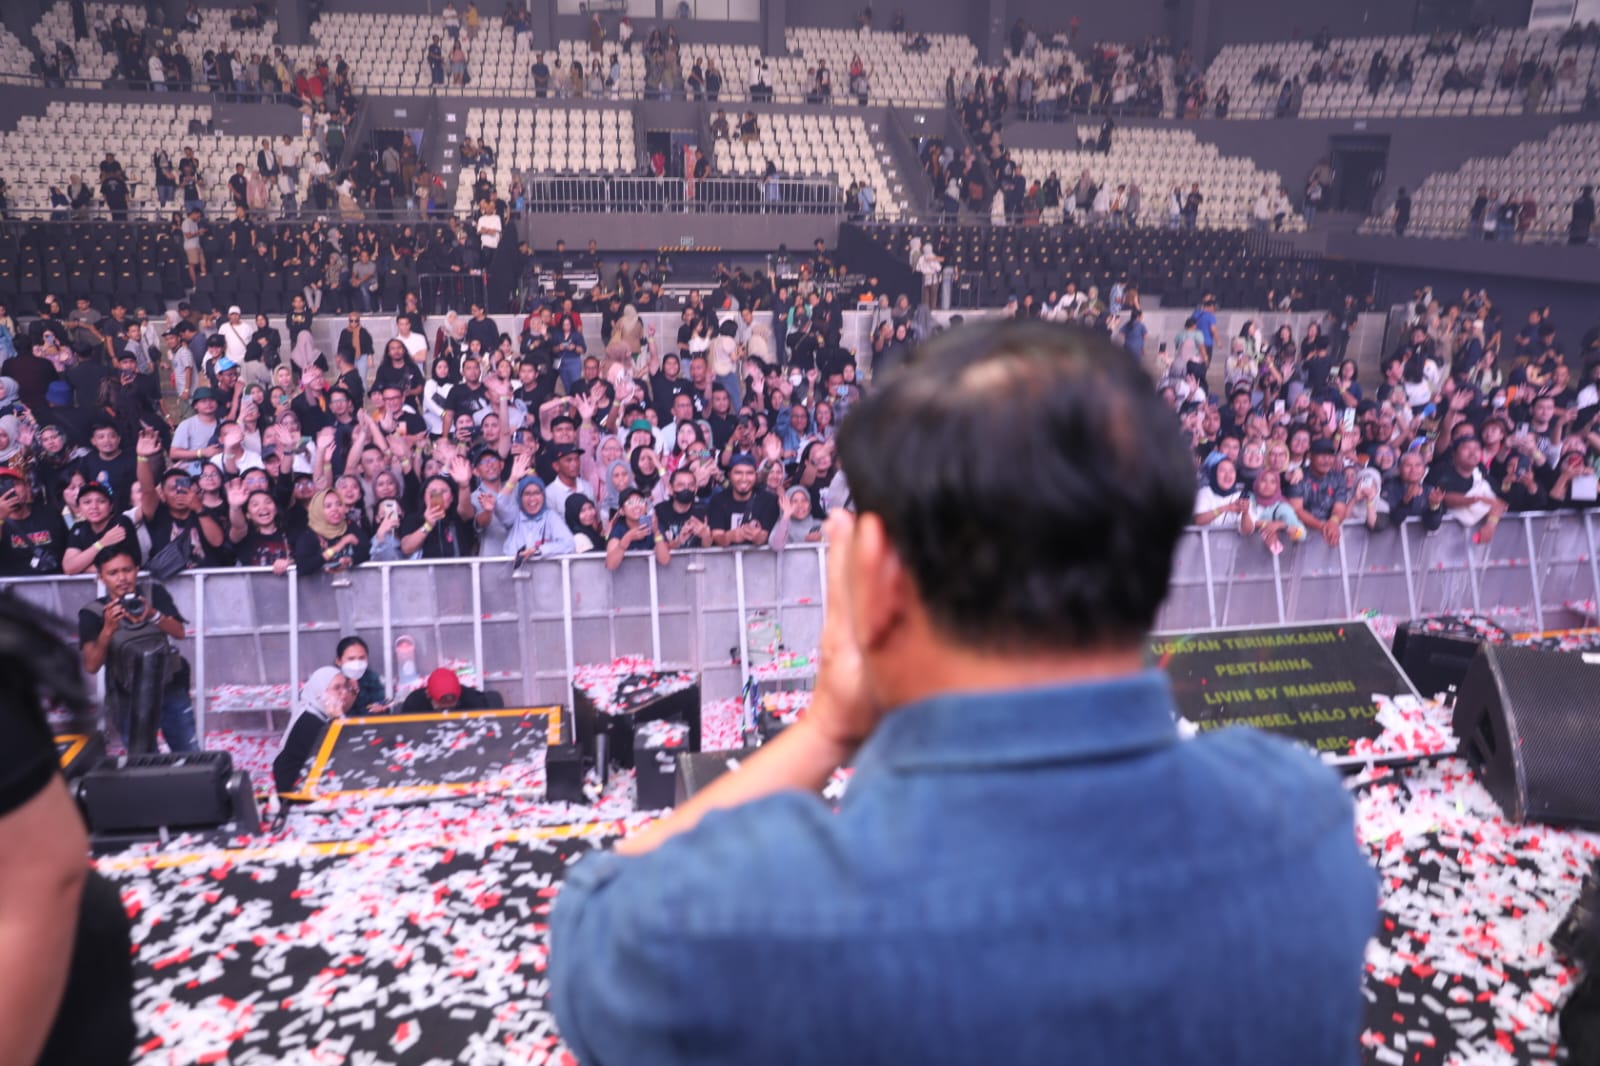 Gemuruh Tepuk Tangan Sambut Meriah Kehadiran Prabowo di Konser 3 Dekade Ari Lasso, Penonton: Prabowo Presiden, I Love You!